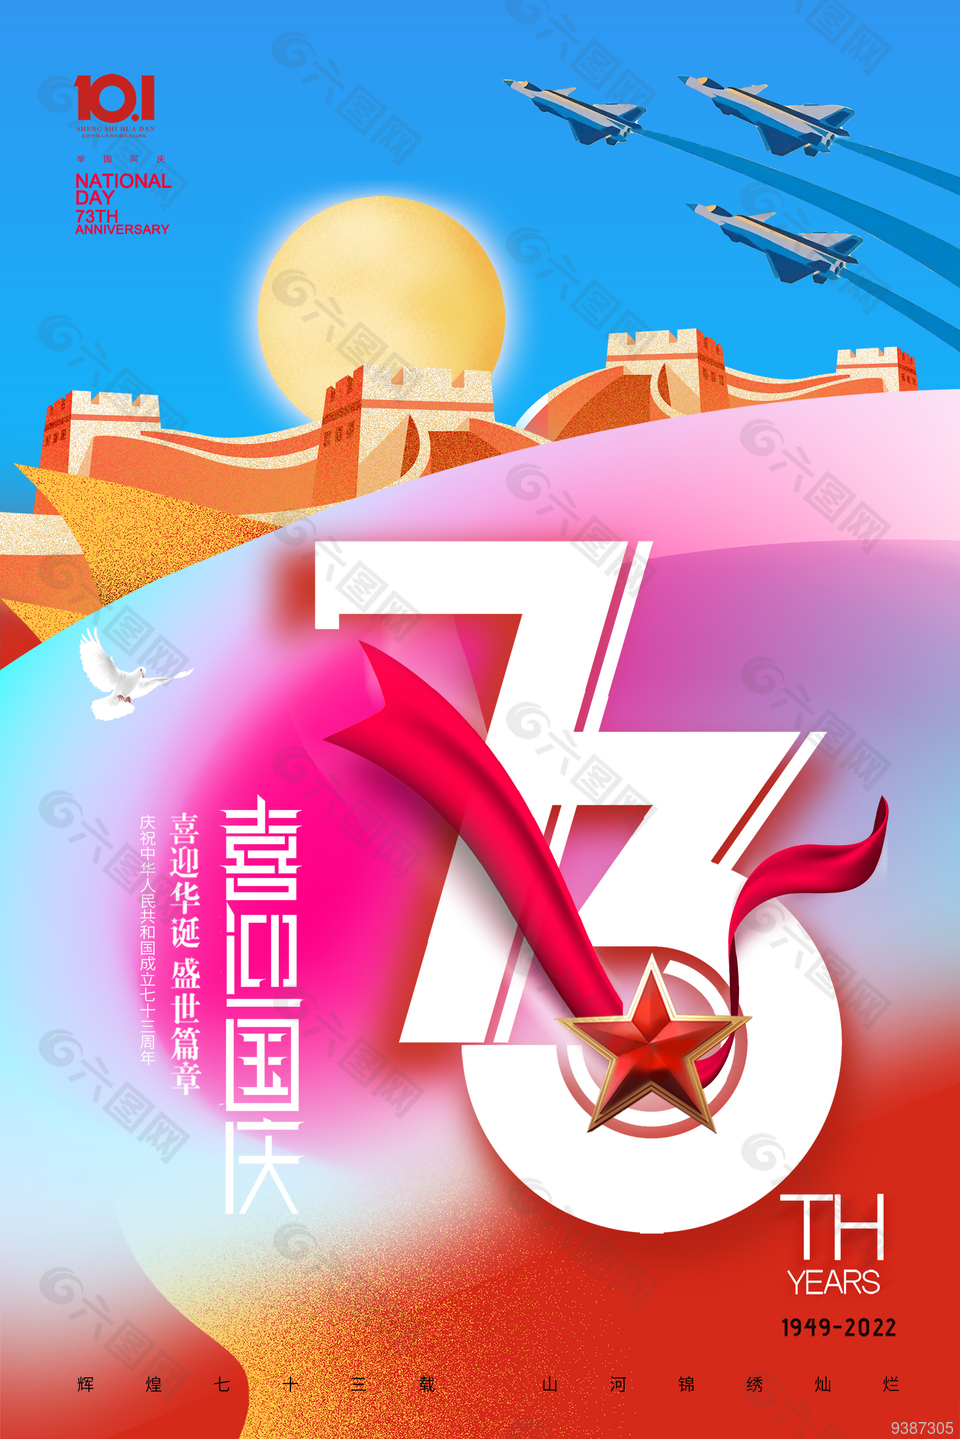 彩色创意传统节日国庆宣传海报